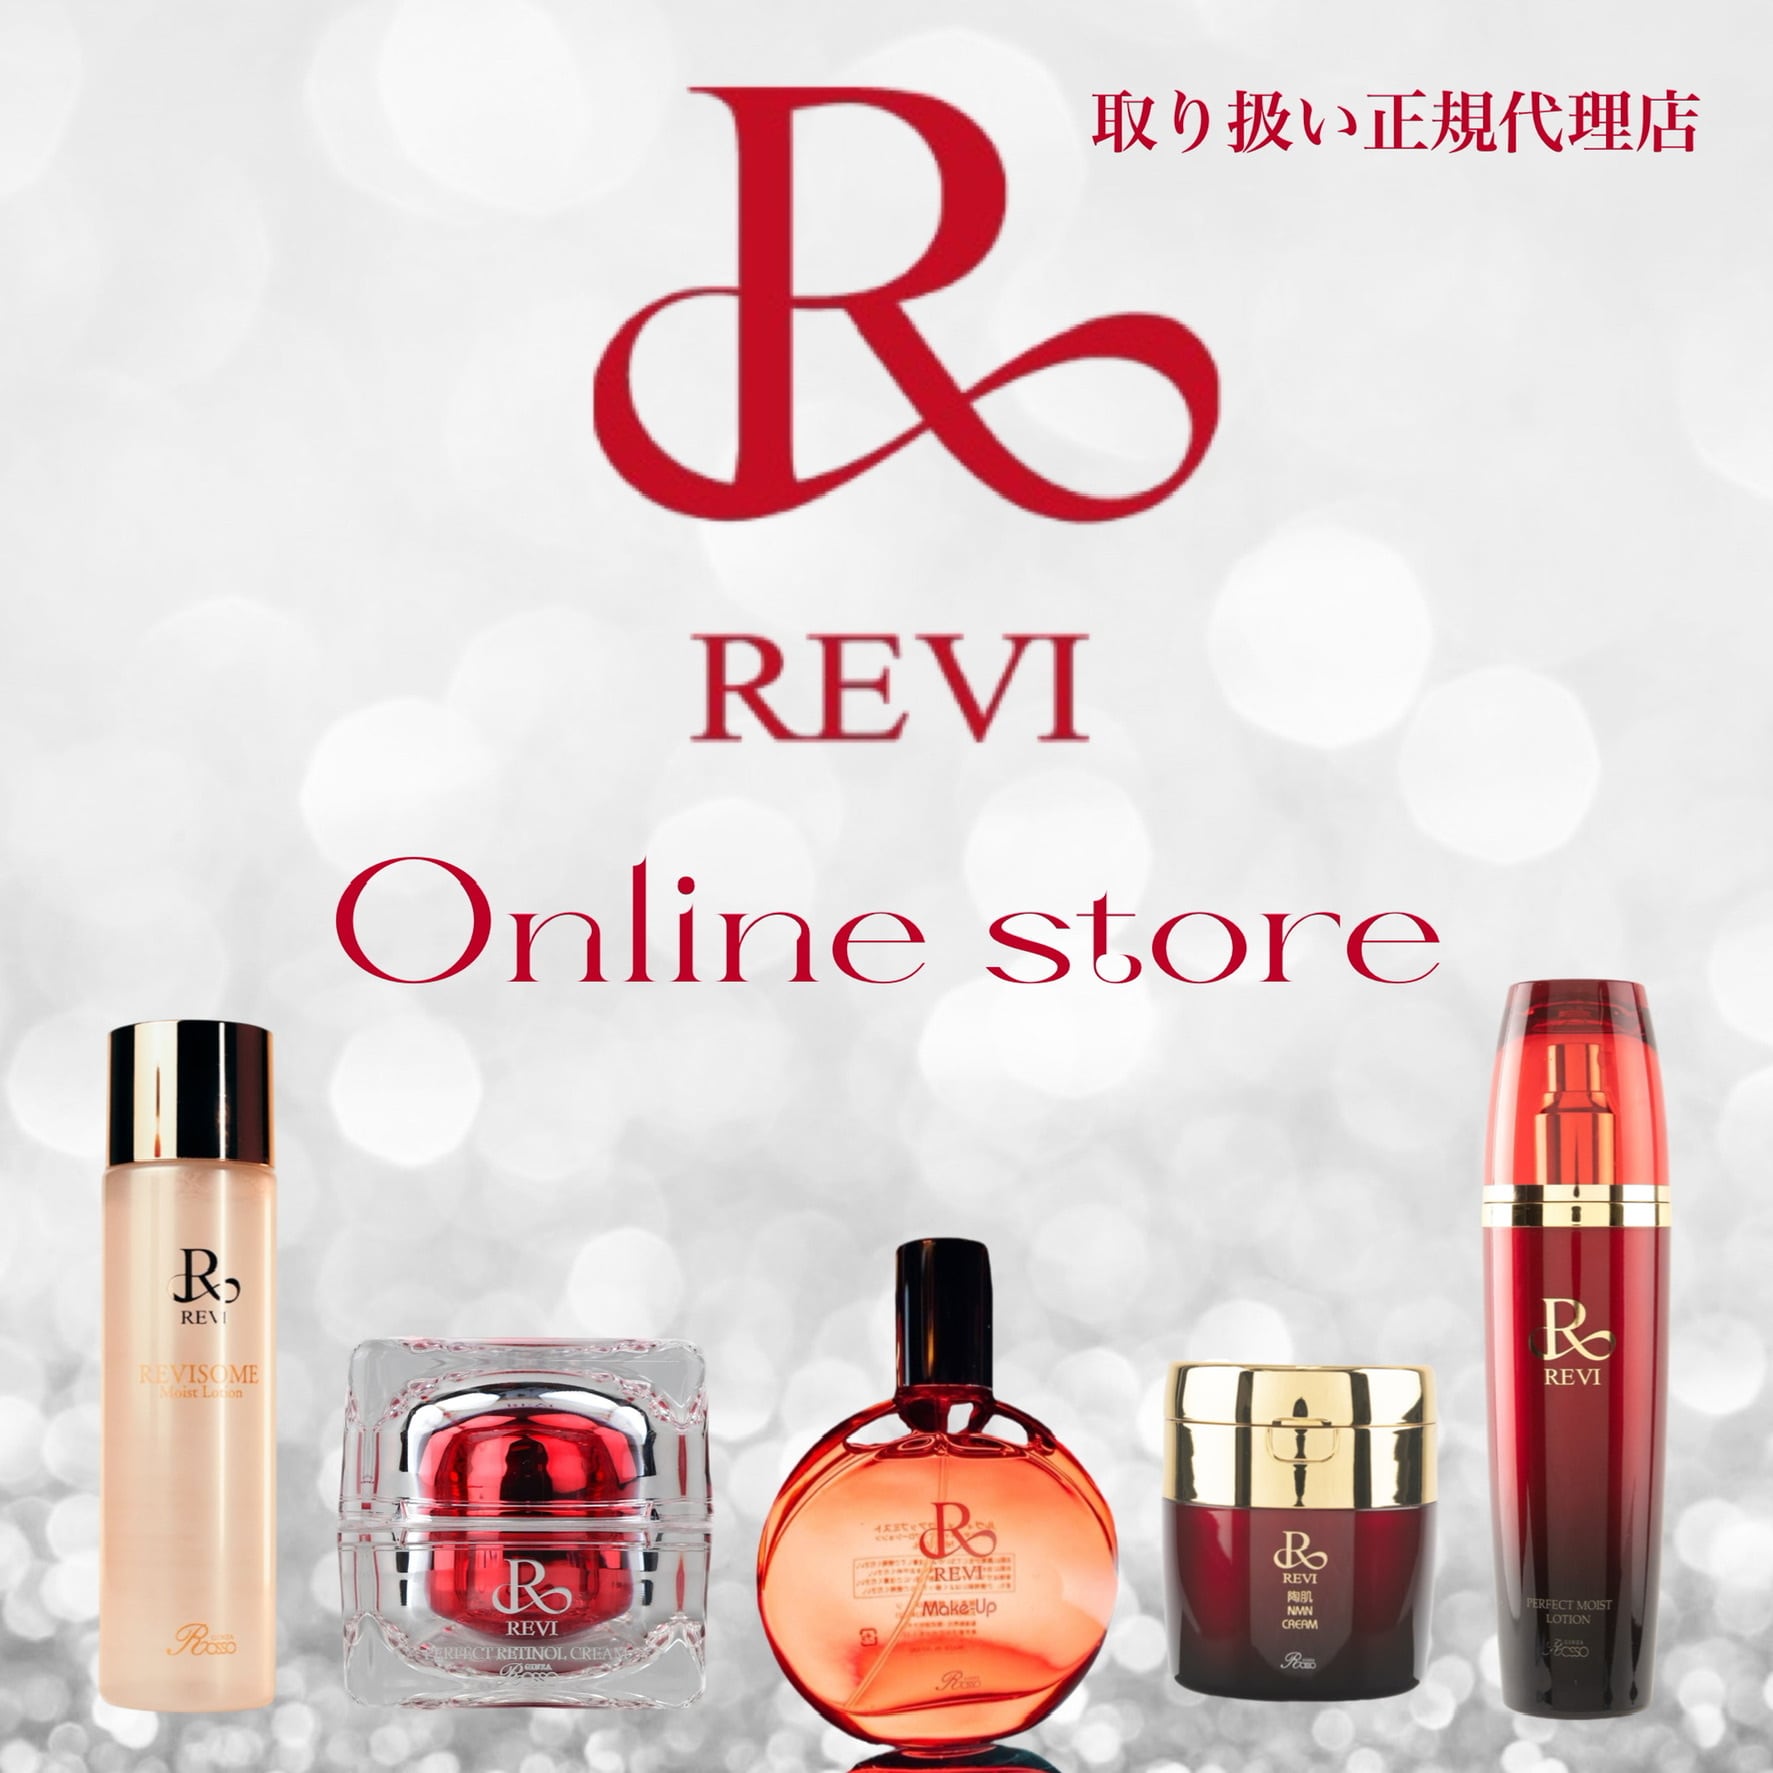 REVI online shop